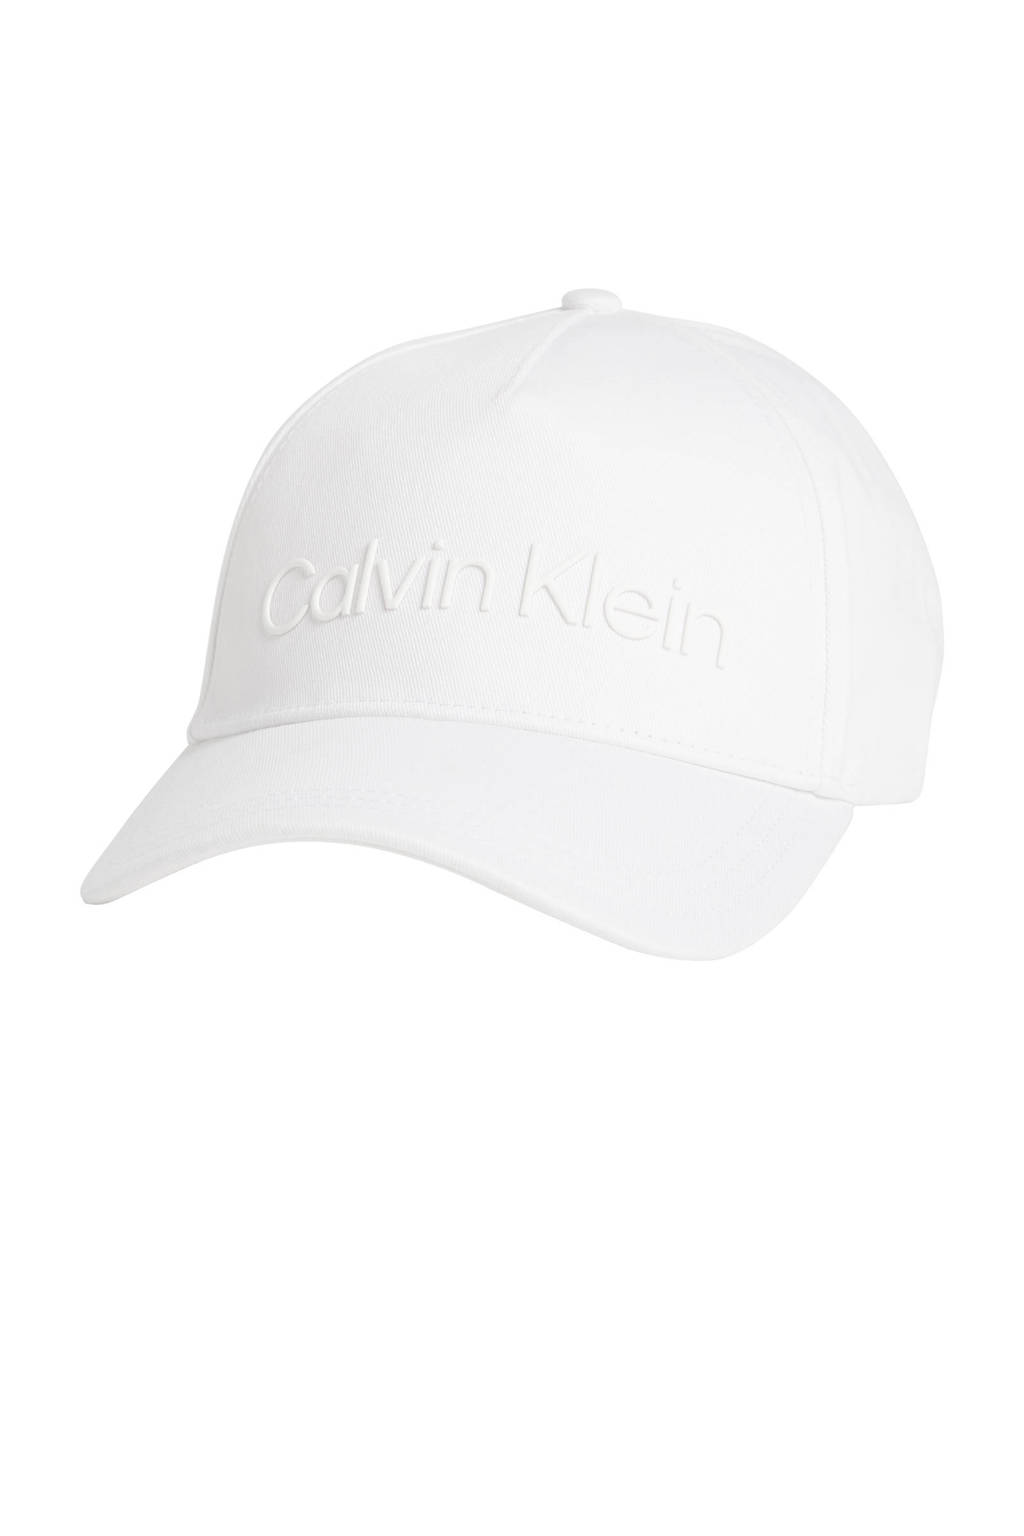 Calvin Klein pet met logo wit, Wit